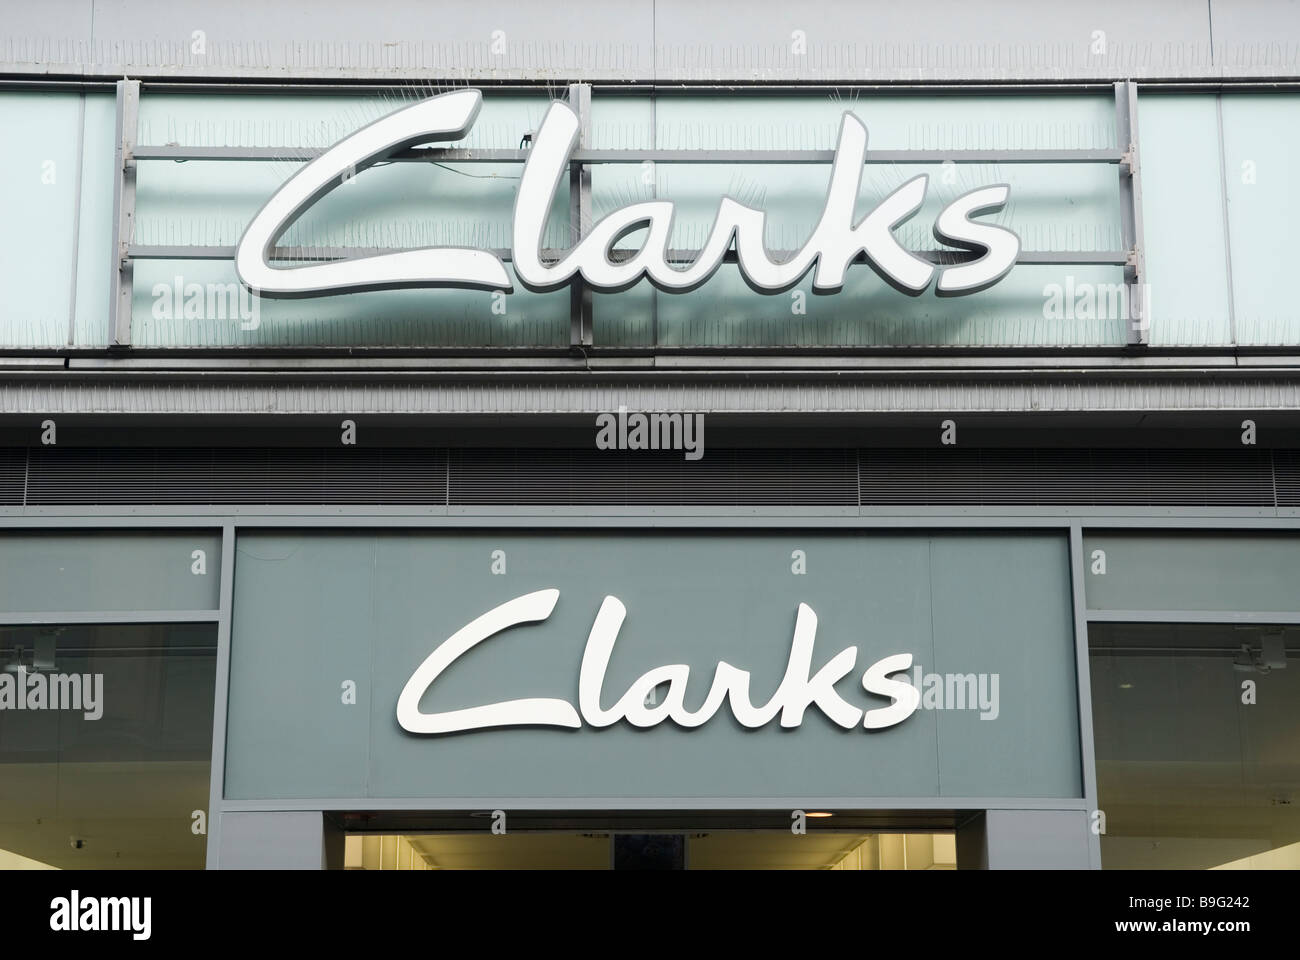 Clarks Shoes store se connecter sur Market street dans le centre-ville de Manchester UK Banque D'Images